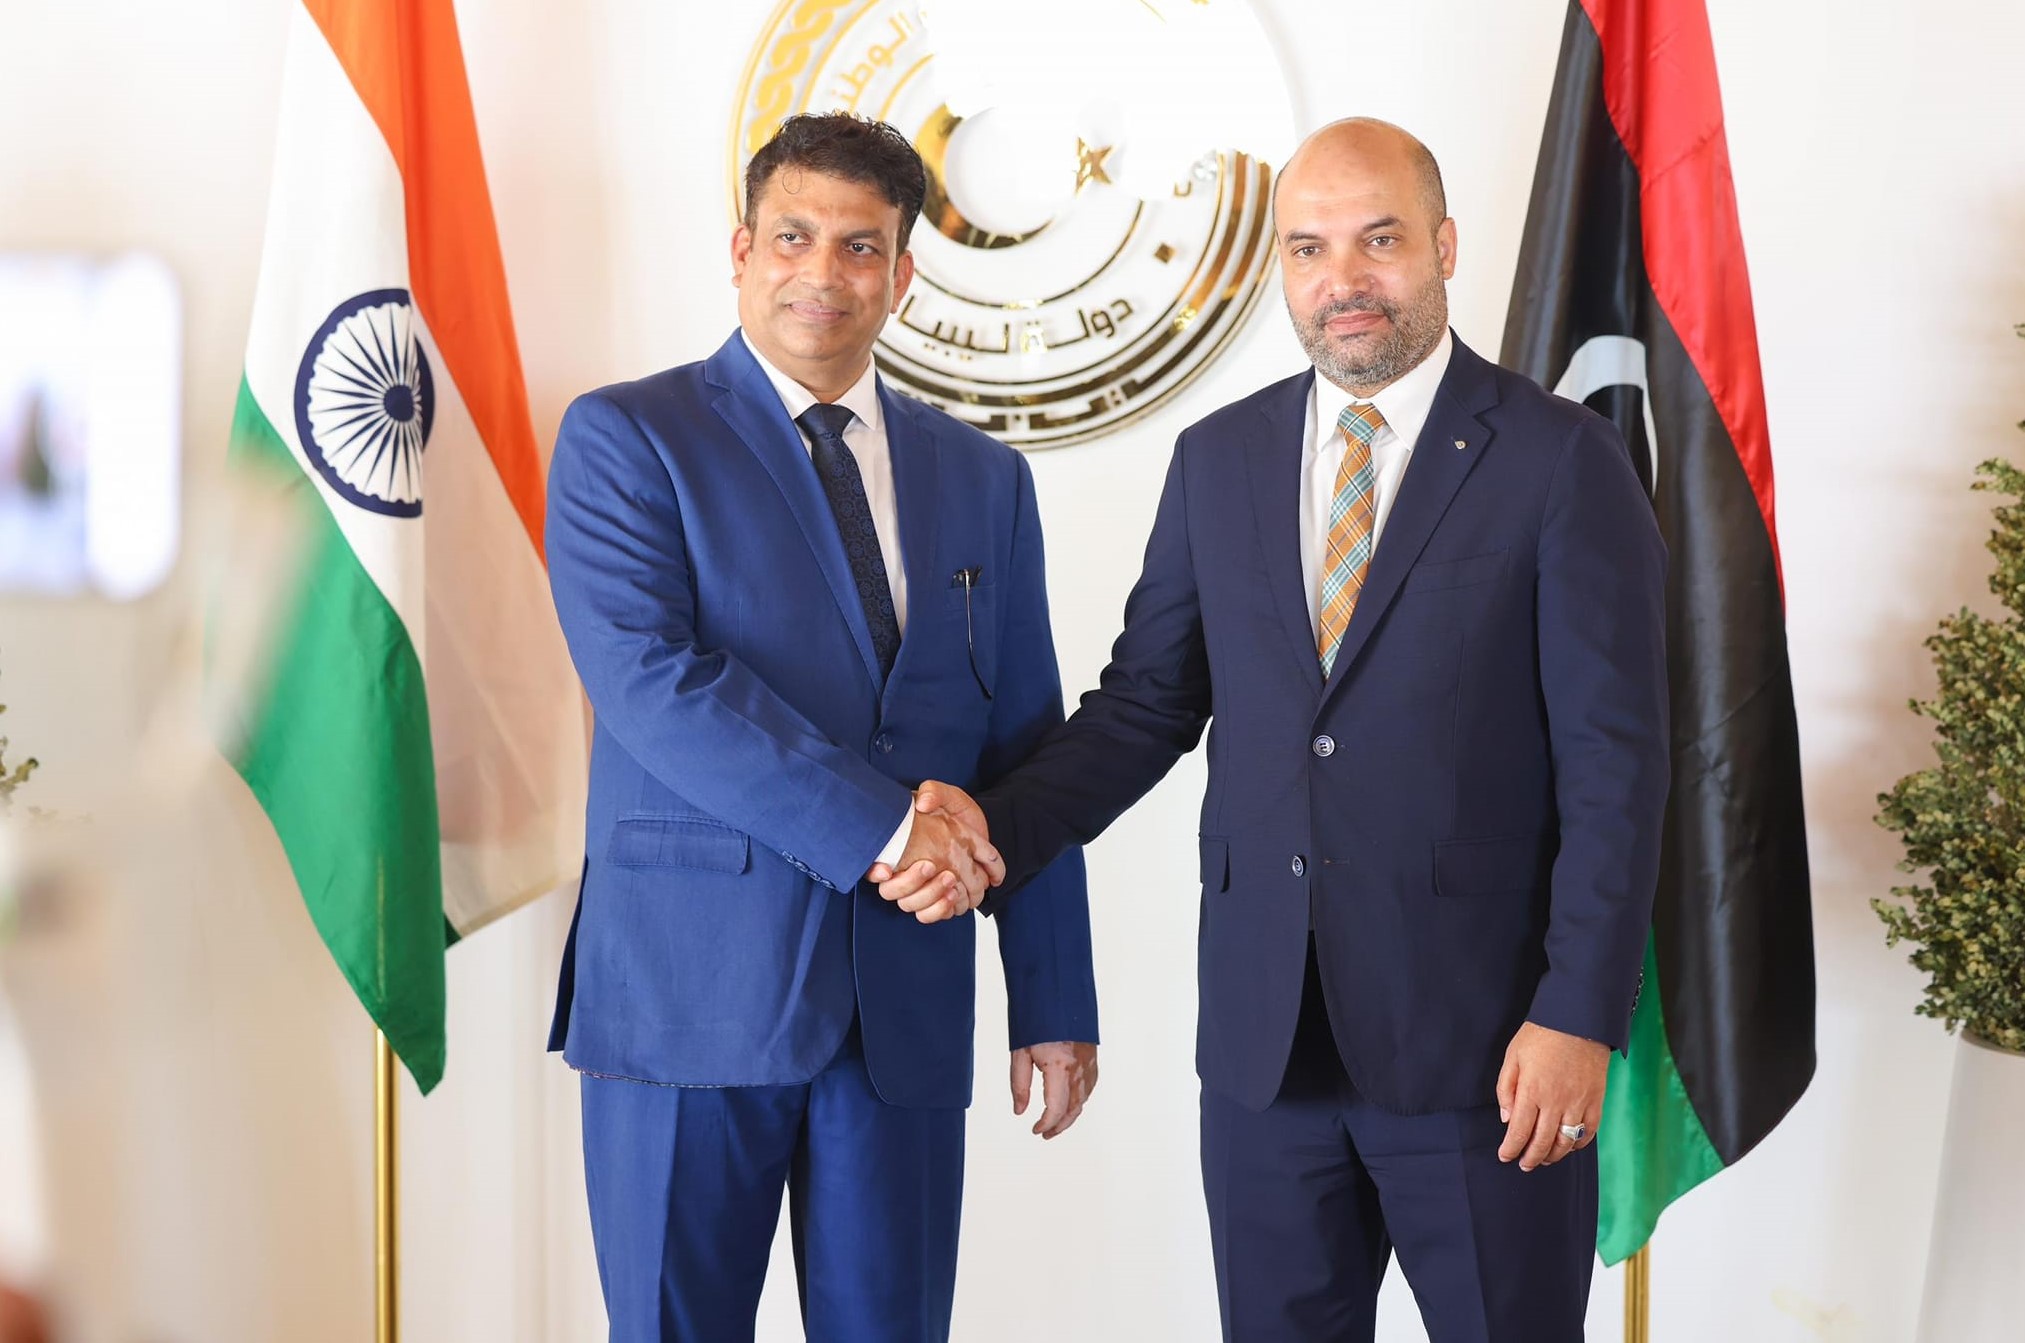  السفارة الهندية في ليبيا تستأنف عملها من العاصمة طرابلس.